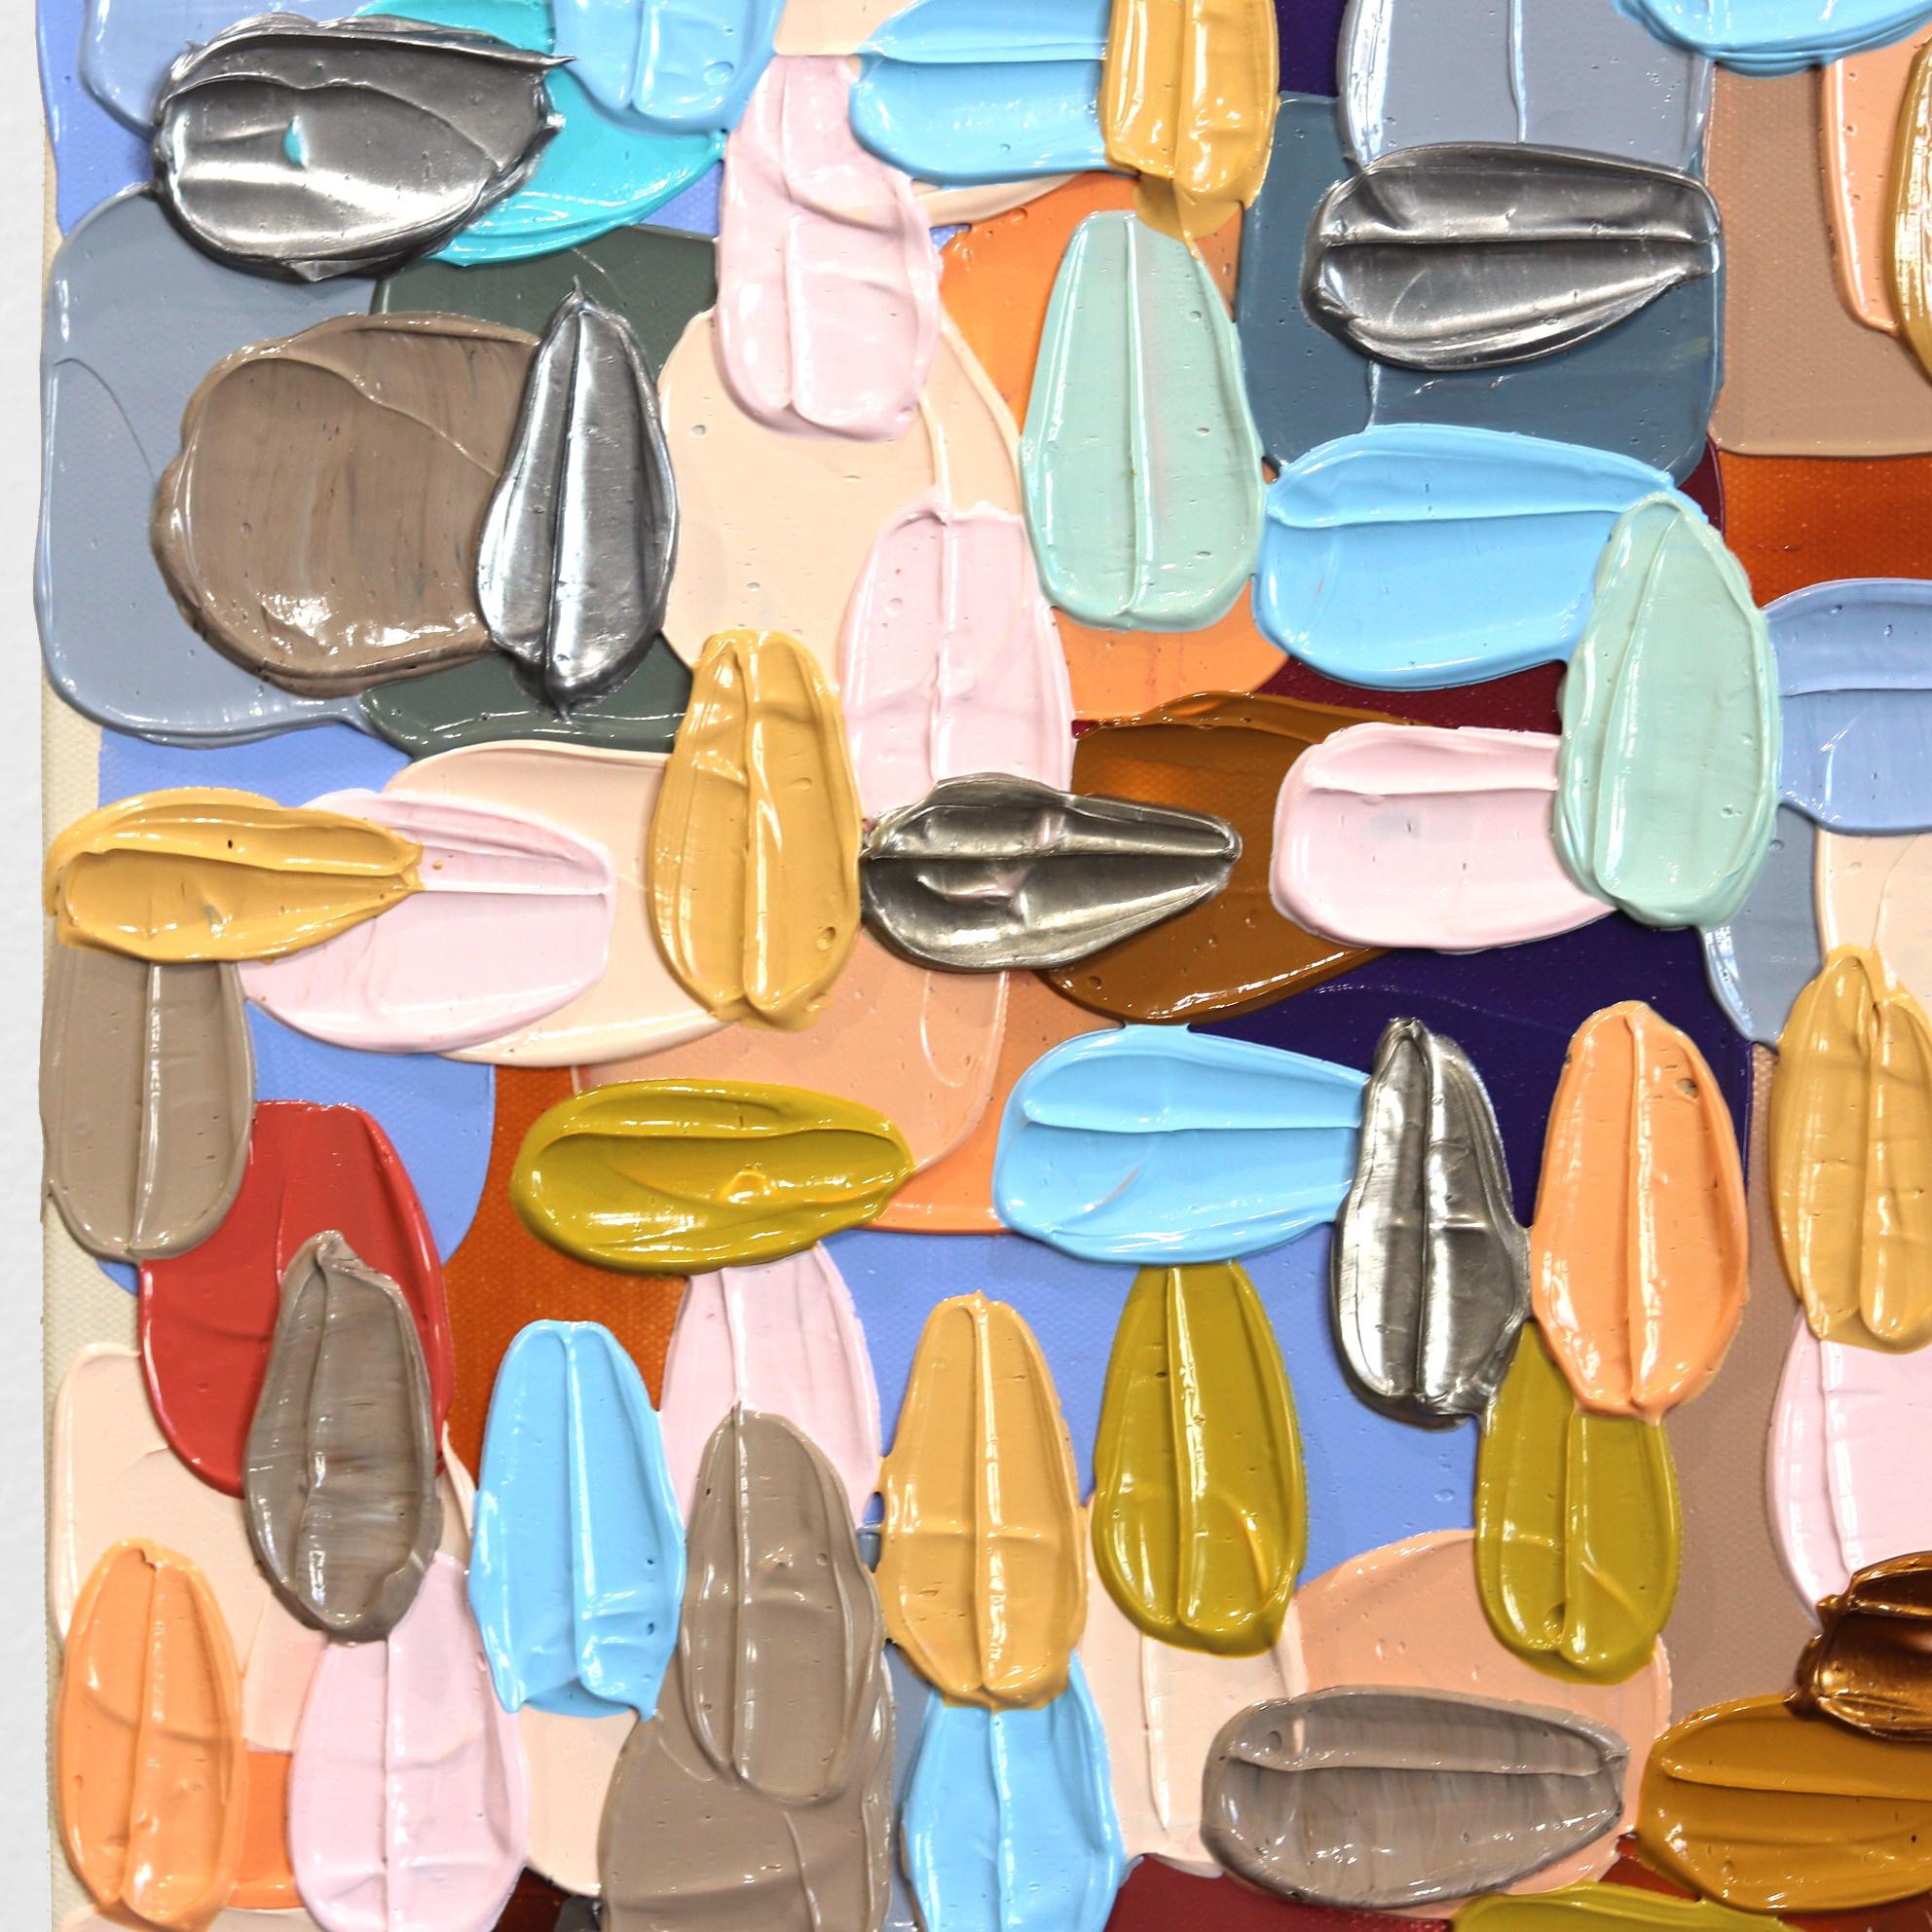 Des touches de couleurs vives peintes par empâtement constituent la trame des œuvres d'art abstraites de l'artiste Shiri Phillips. Ses peintures sont inondées de texture grâce à la superposition de la peinture acrylique en coups de pinceau fluides.